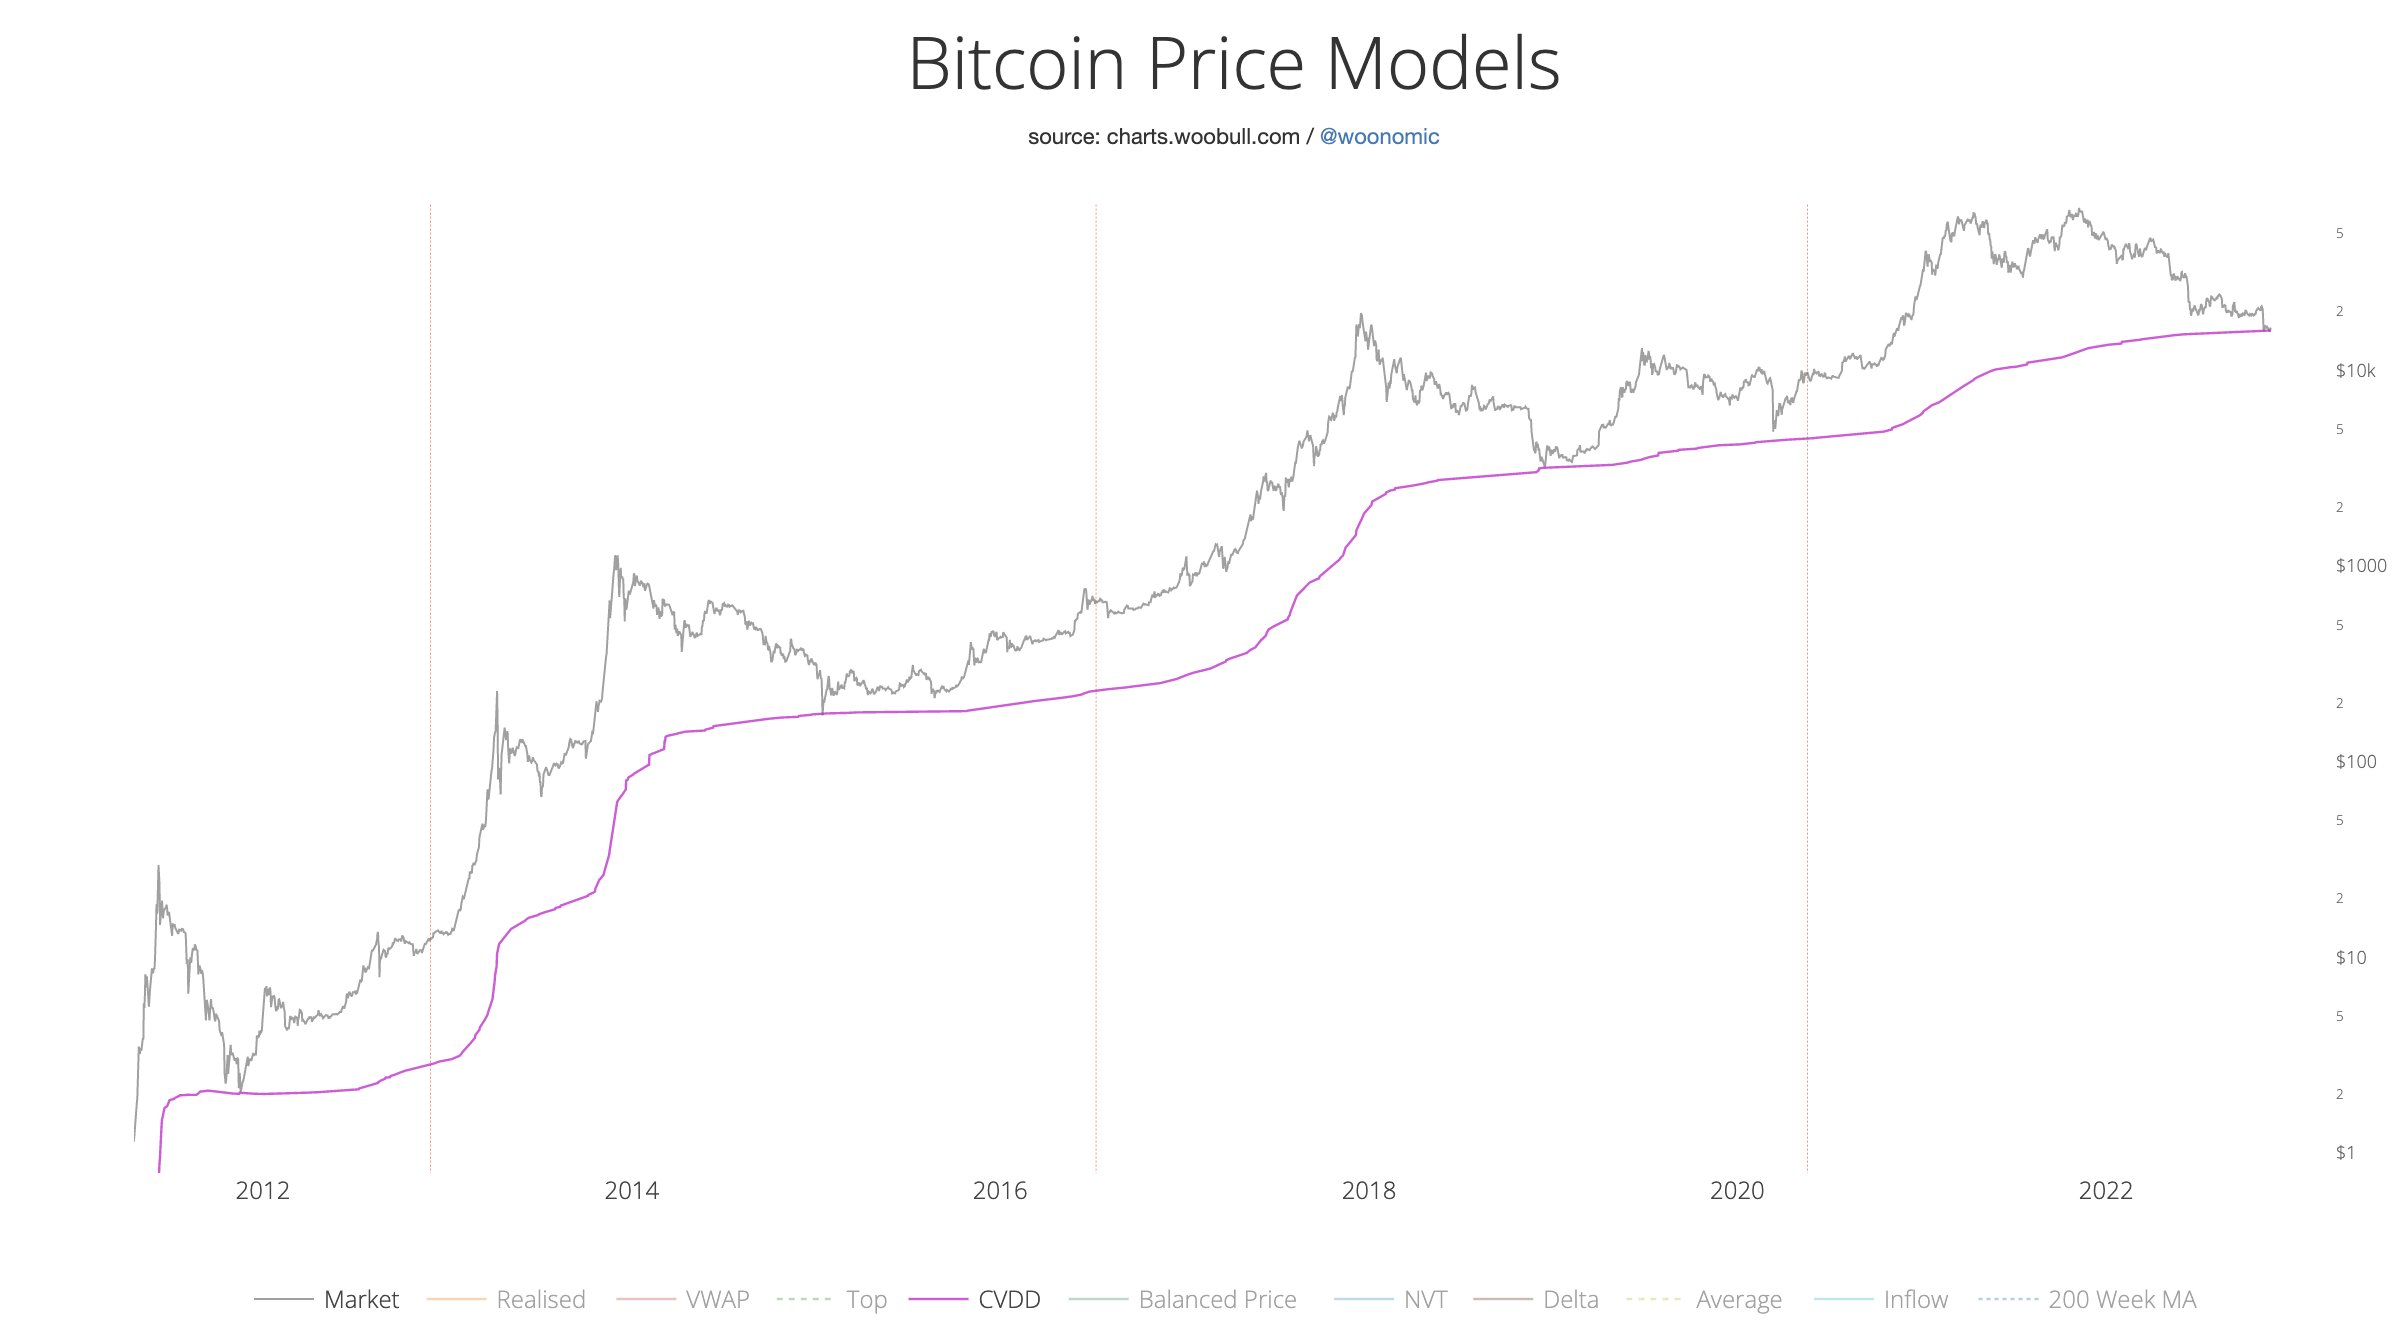 Modelos de precios de Bitcoin